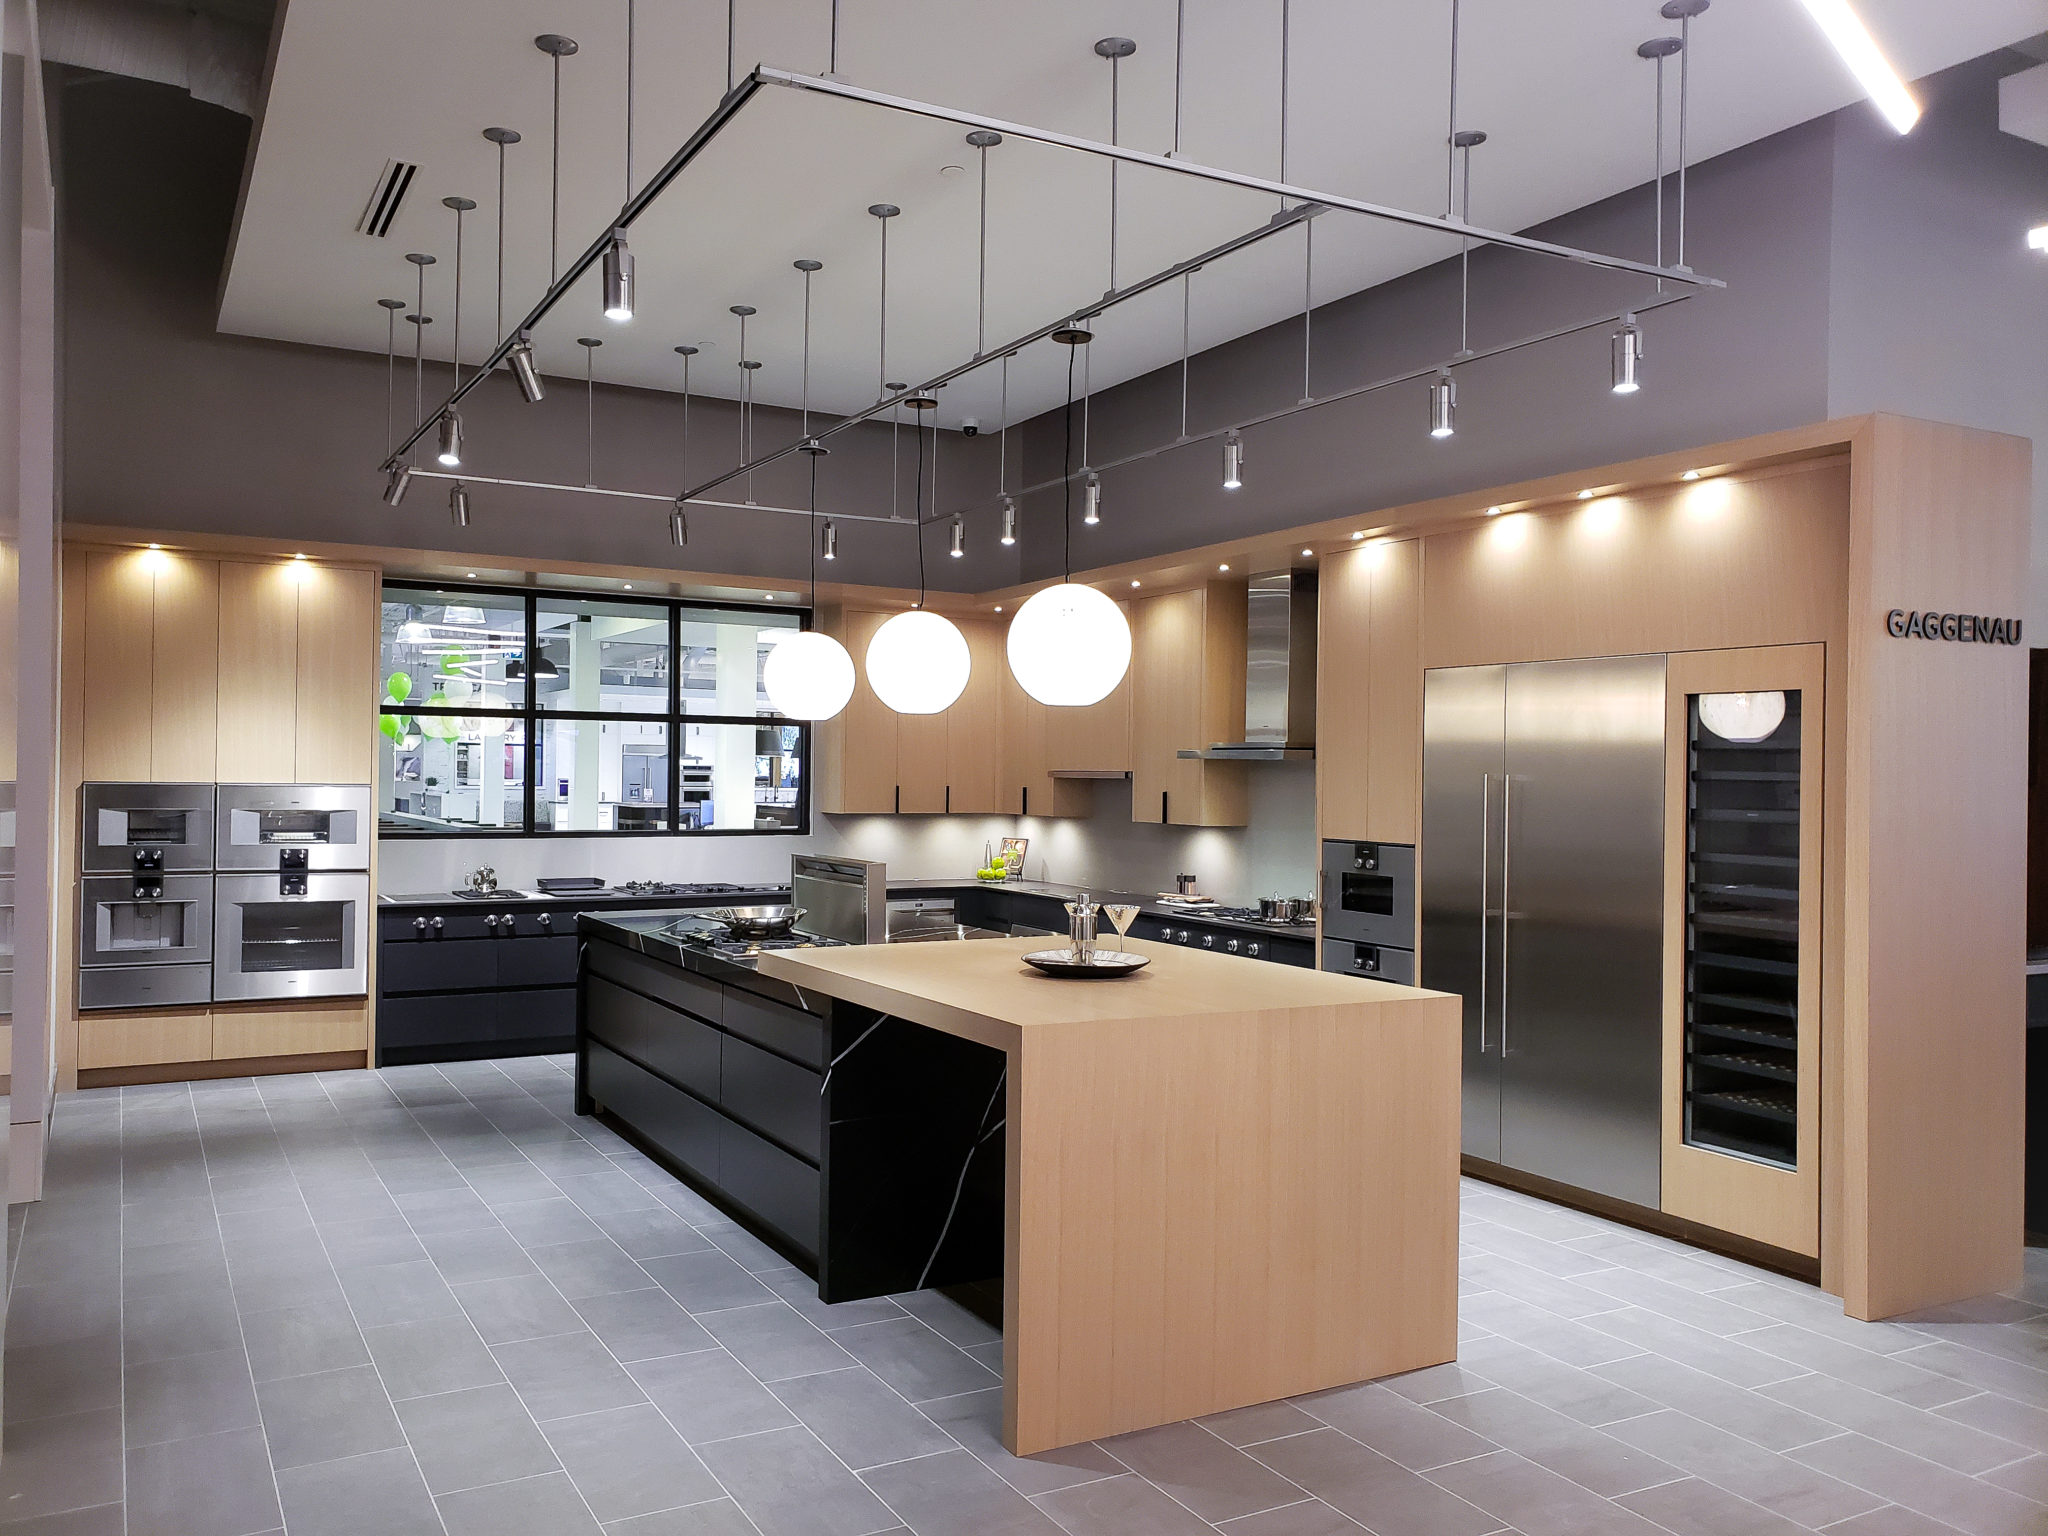 Kitchen Design Styles for 2021 | Kitchen Art Design